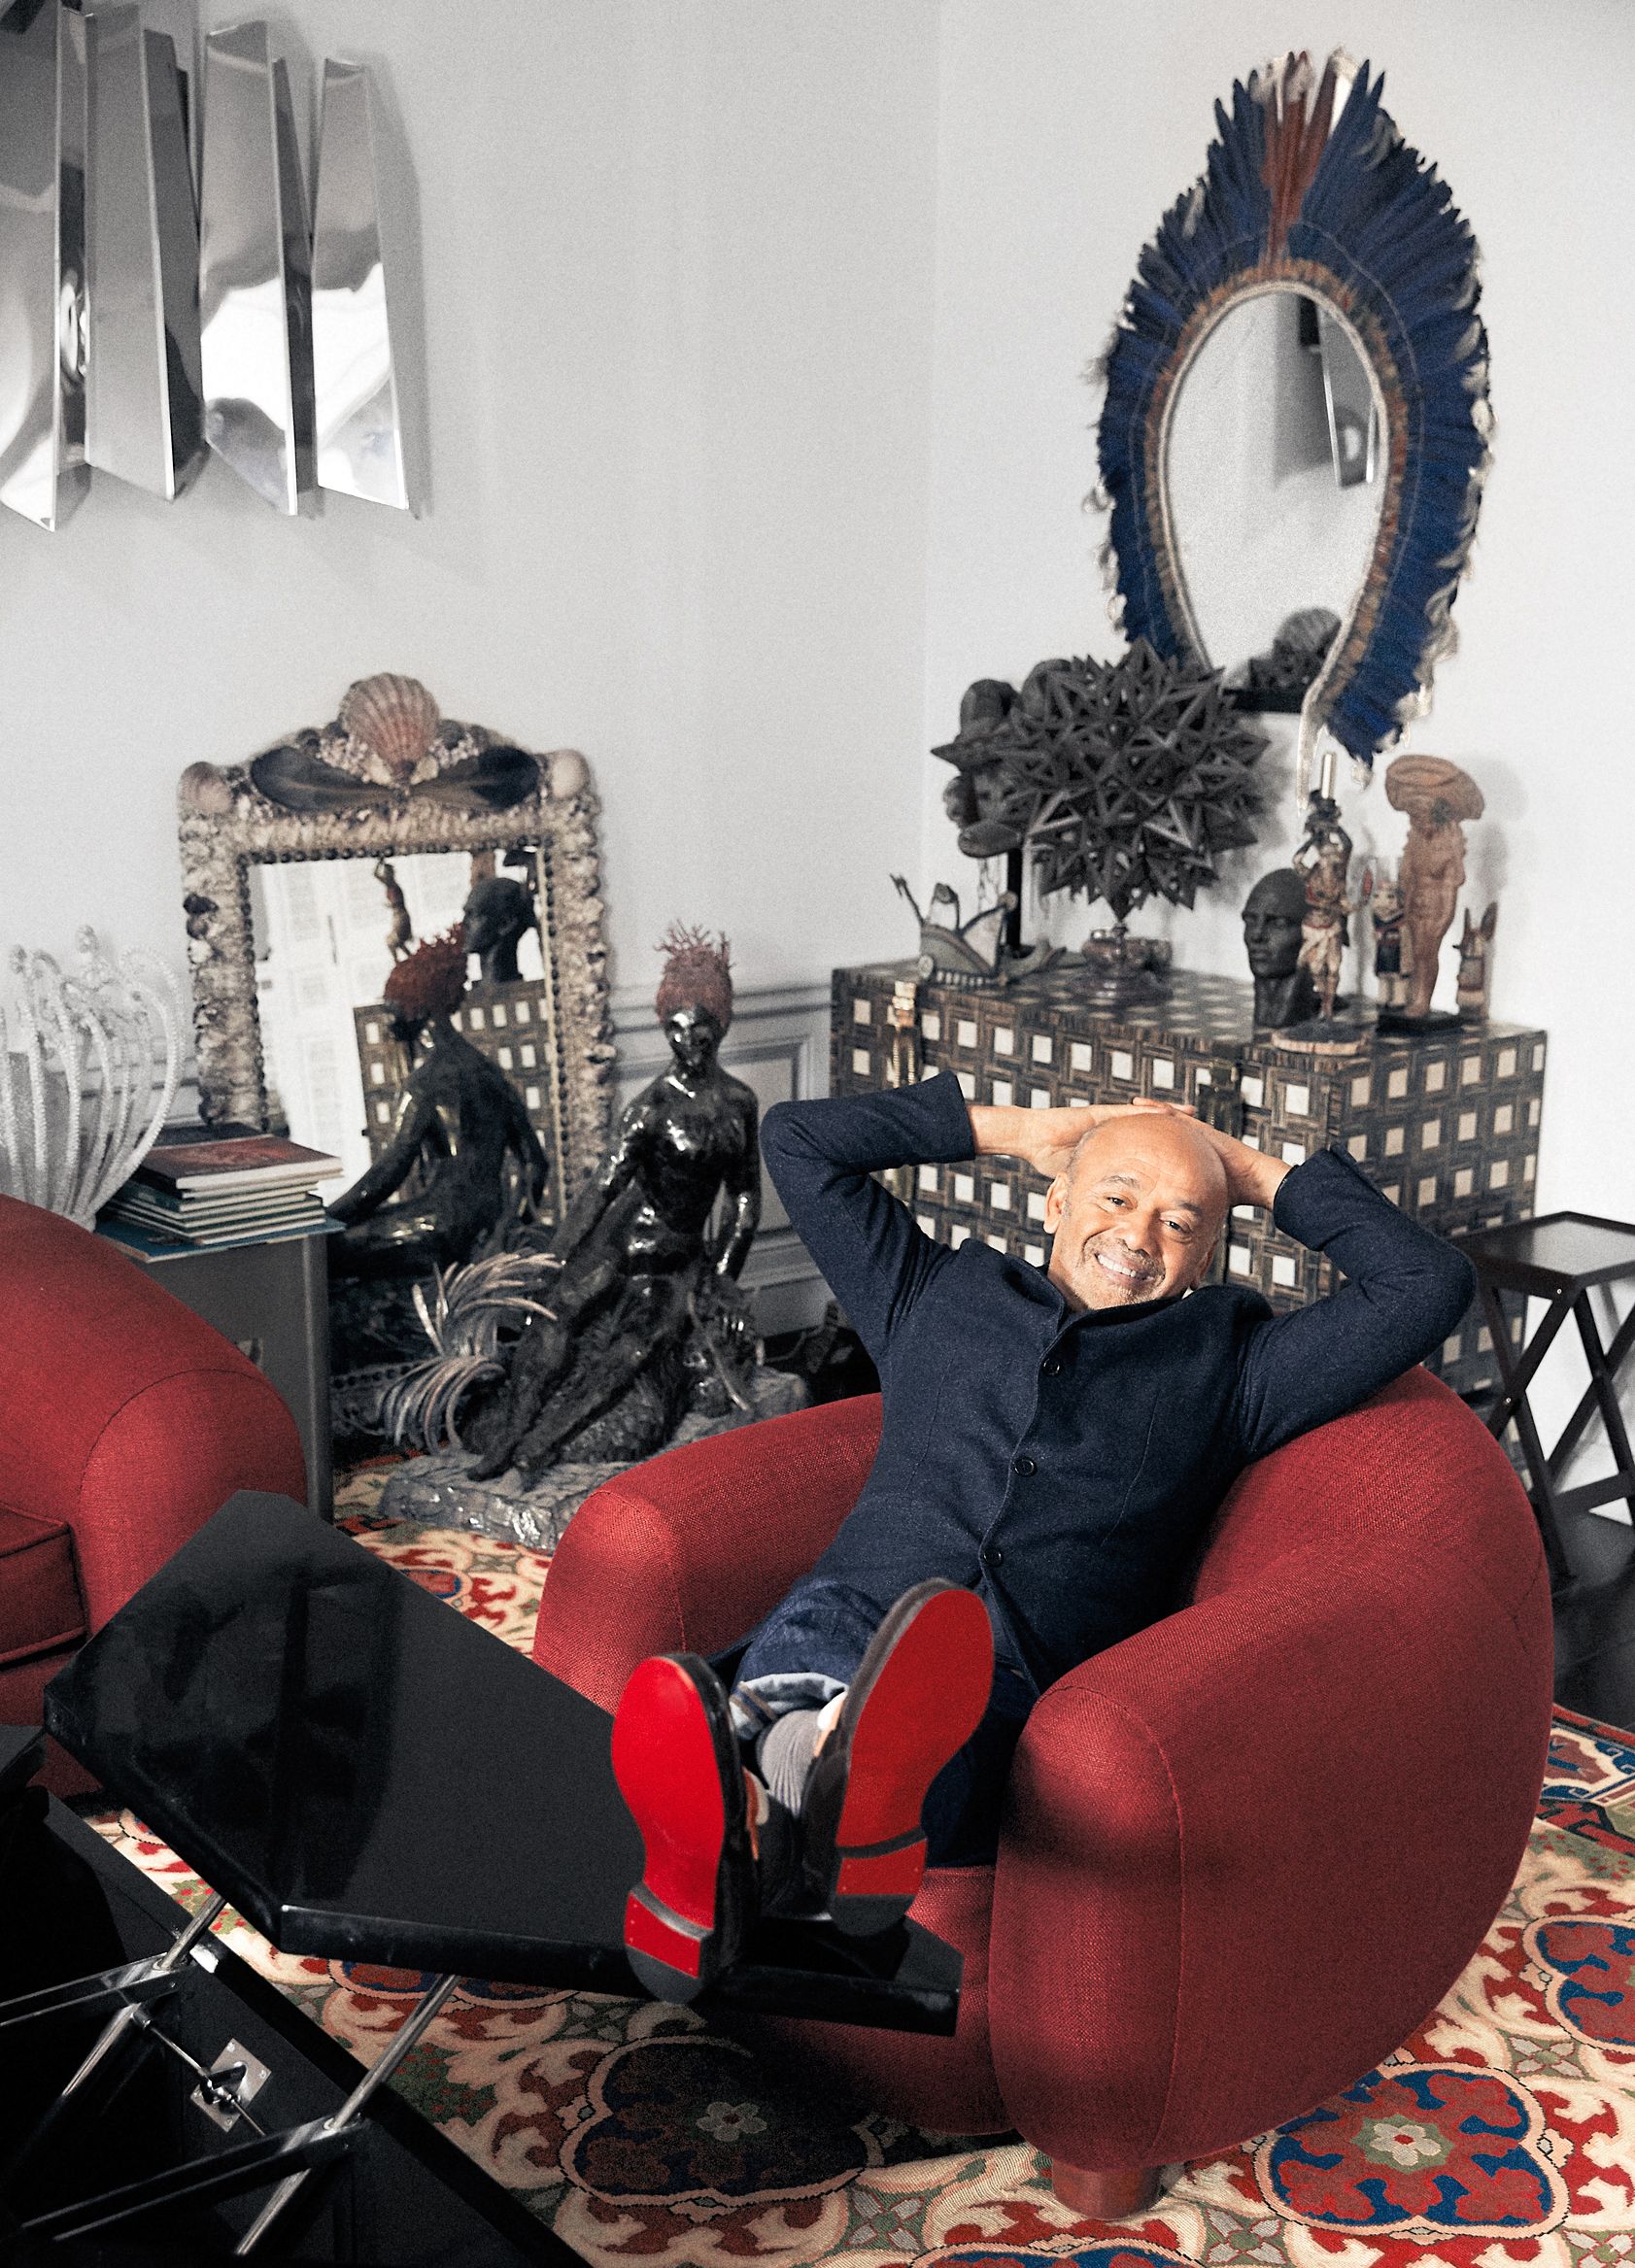 Christian Louboutin - Celebrity Shoe Designer's Paris Apartment